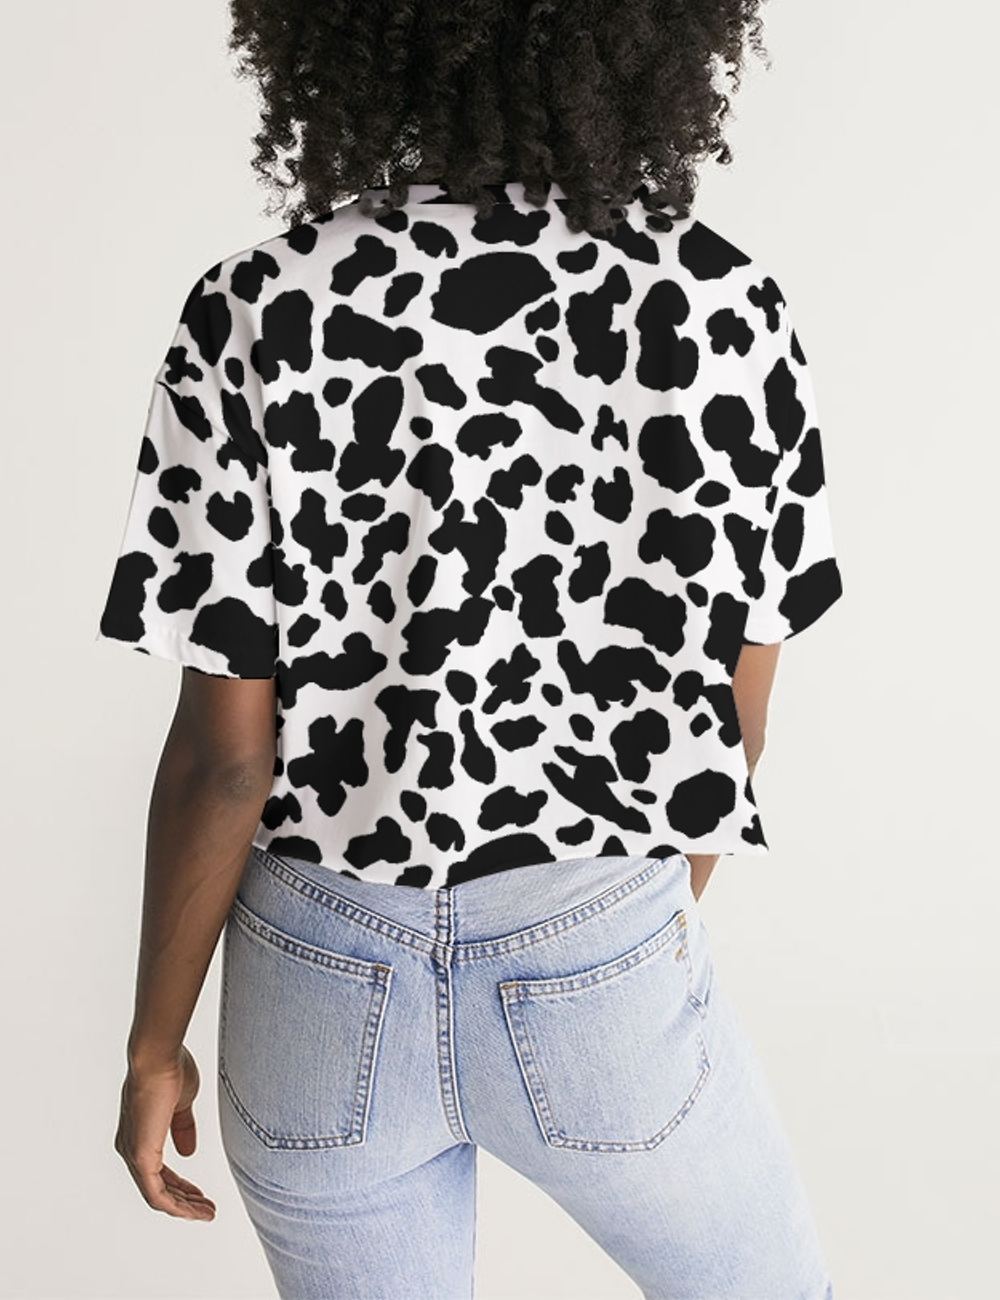 Cow Print Women's Oversized Crop Top T-Shirt OniTakai